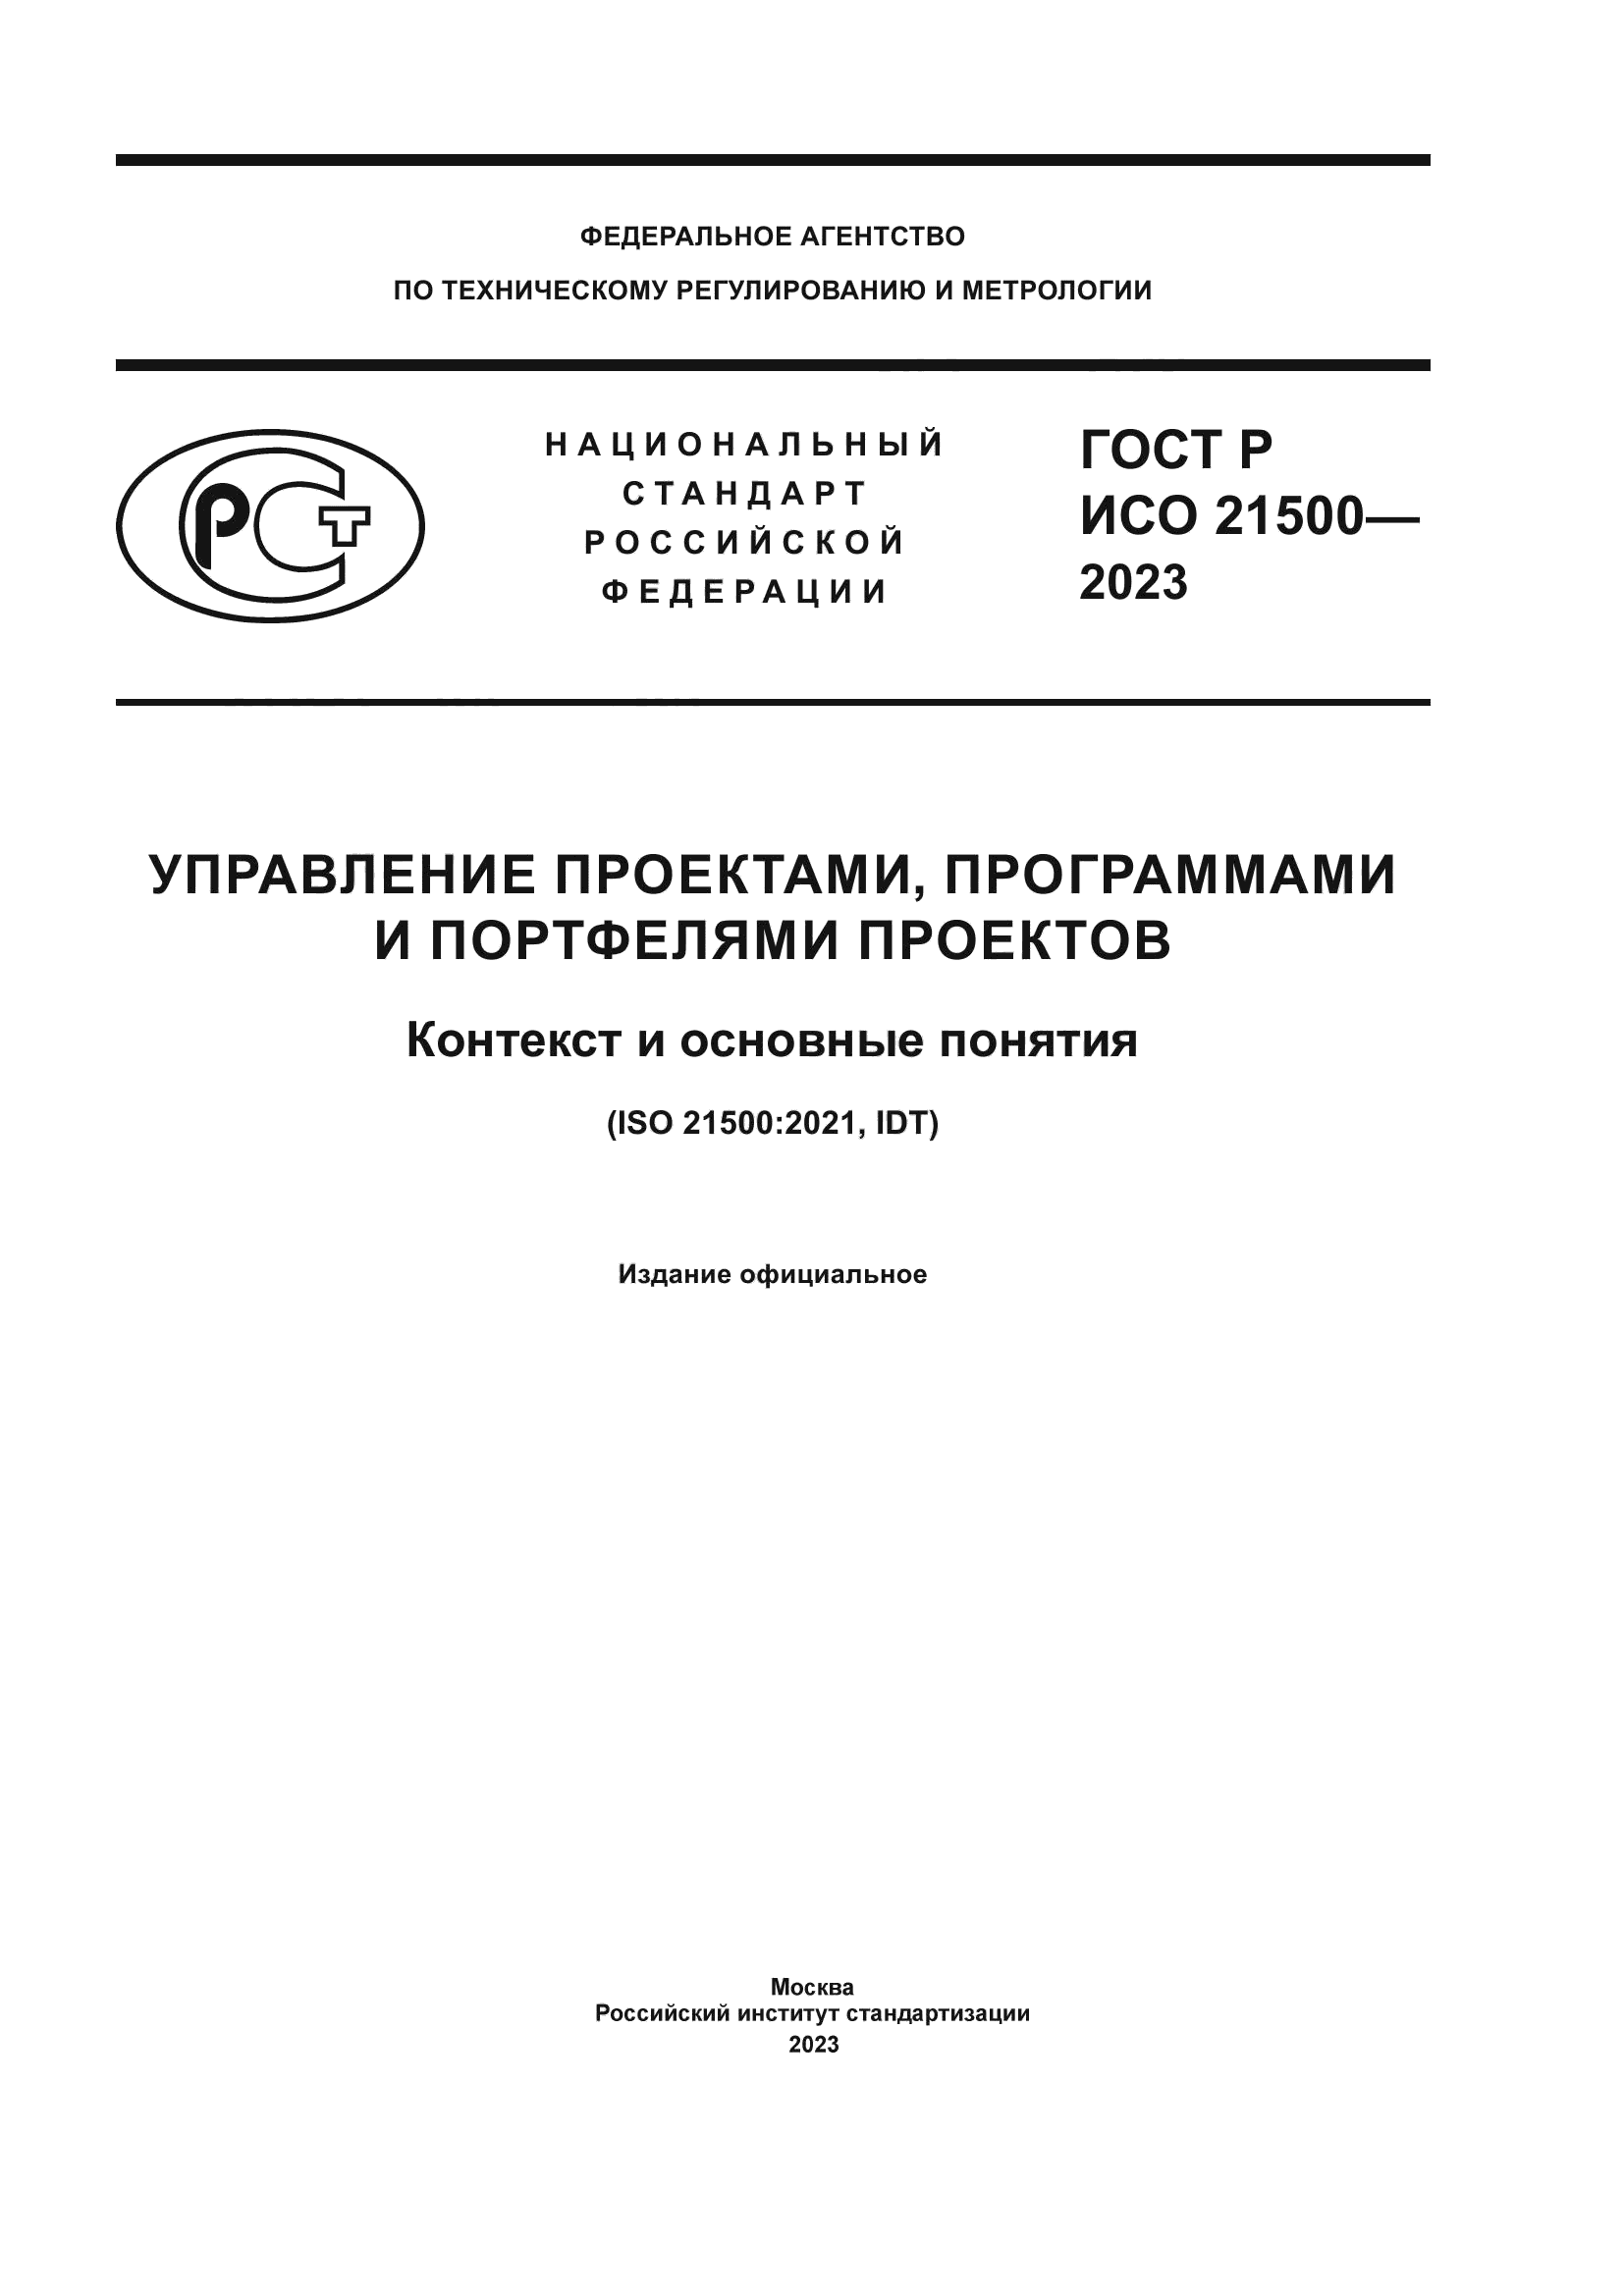 ГОСТ Р ИСО 21500-2023